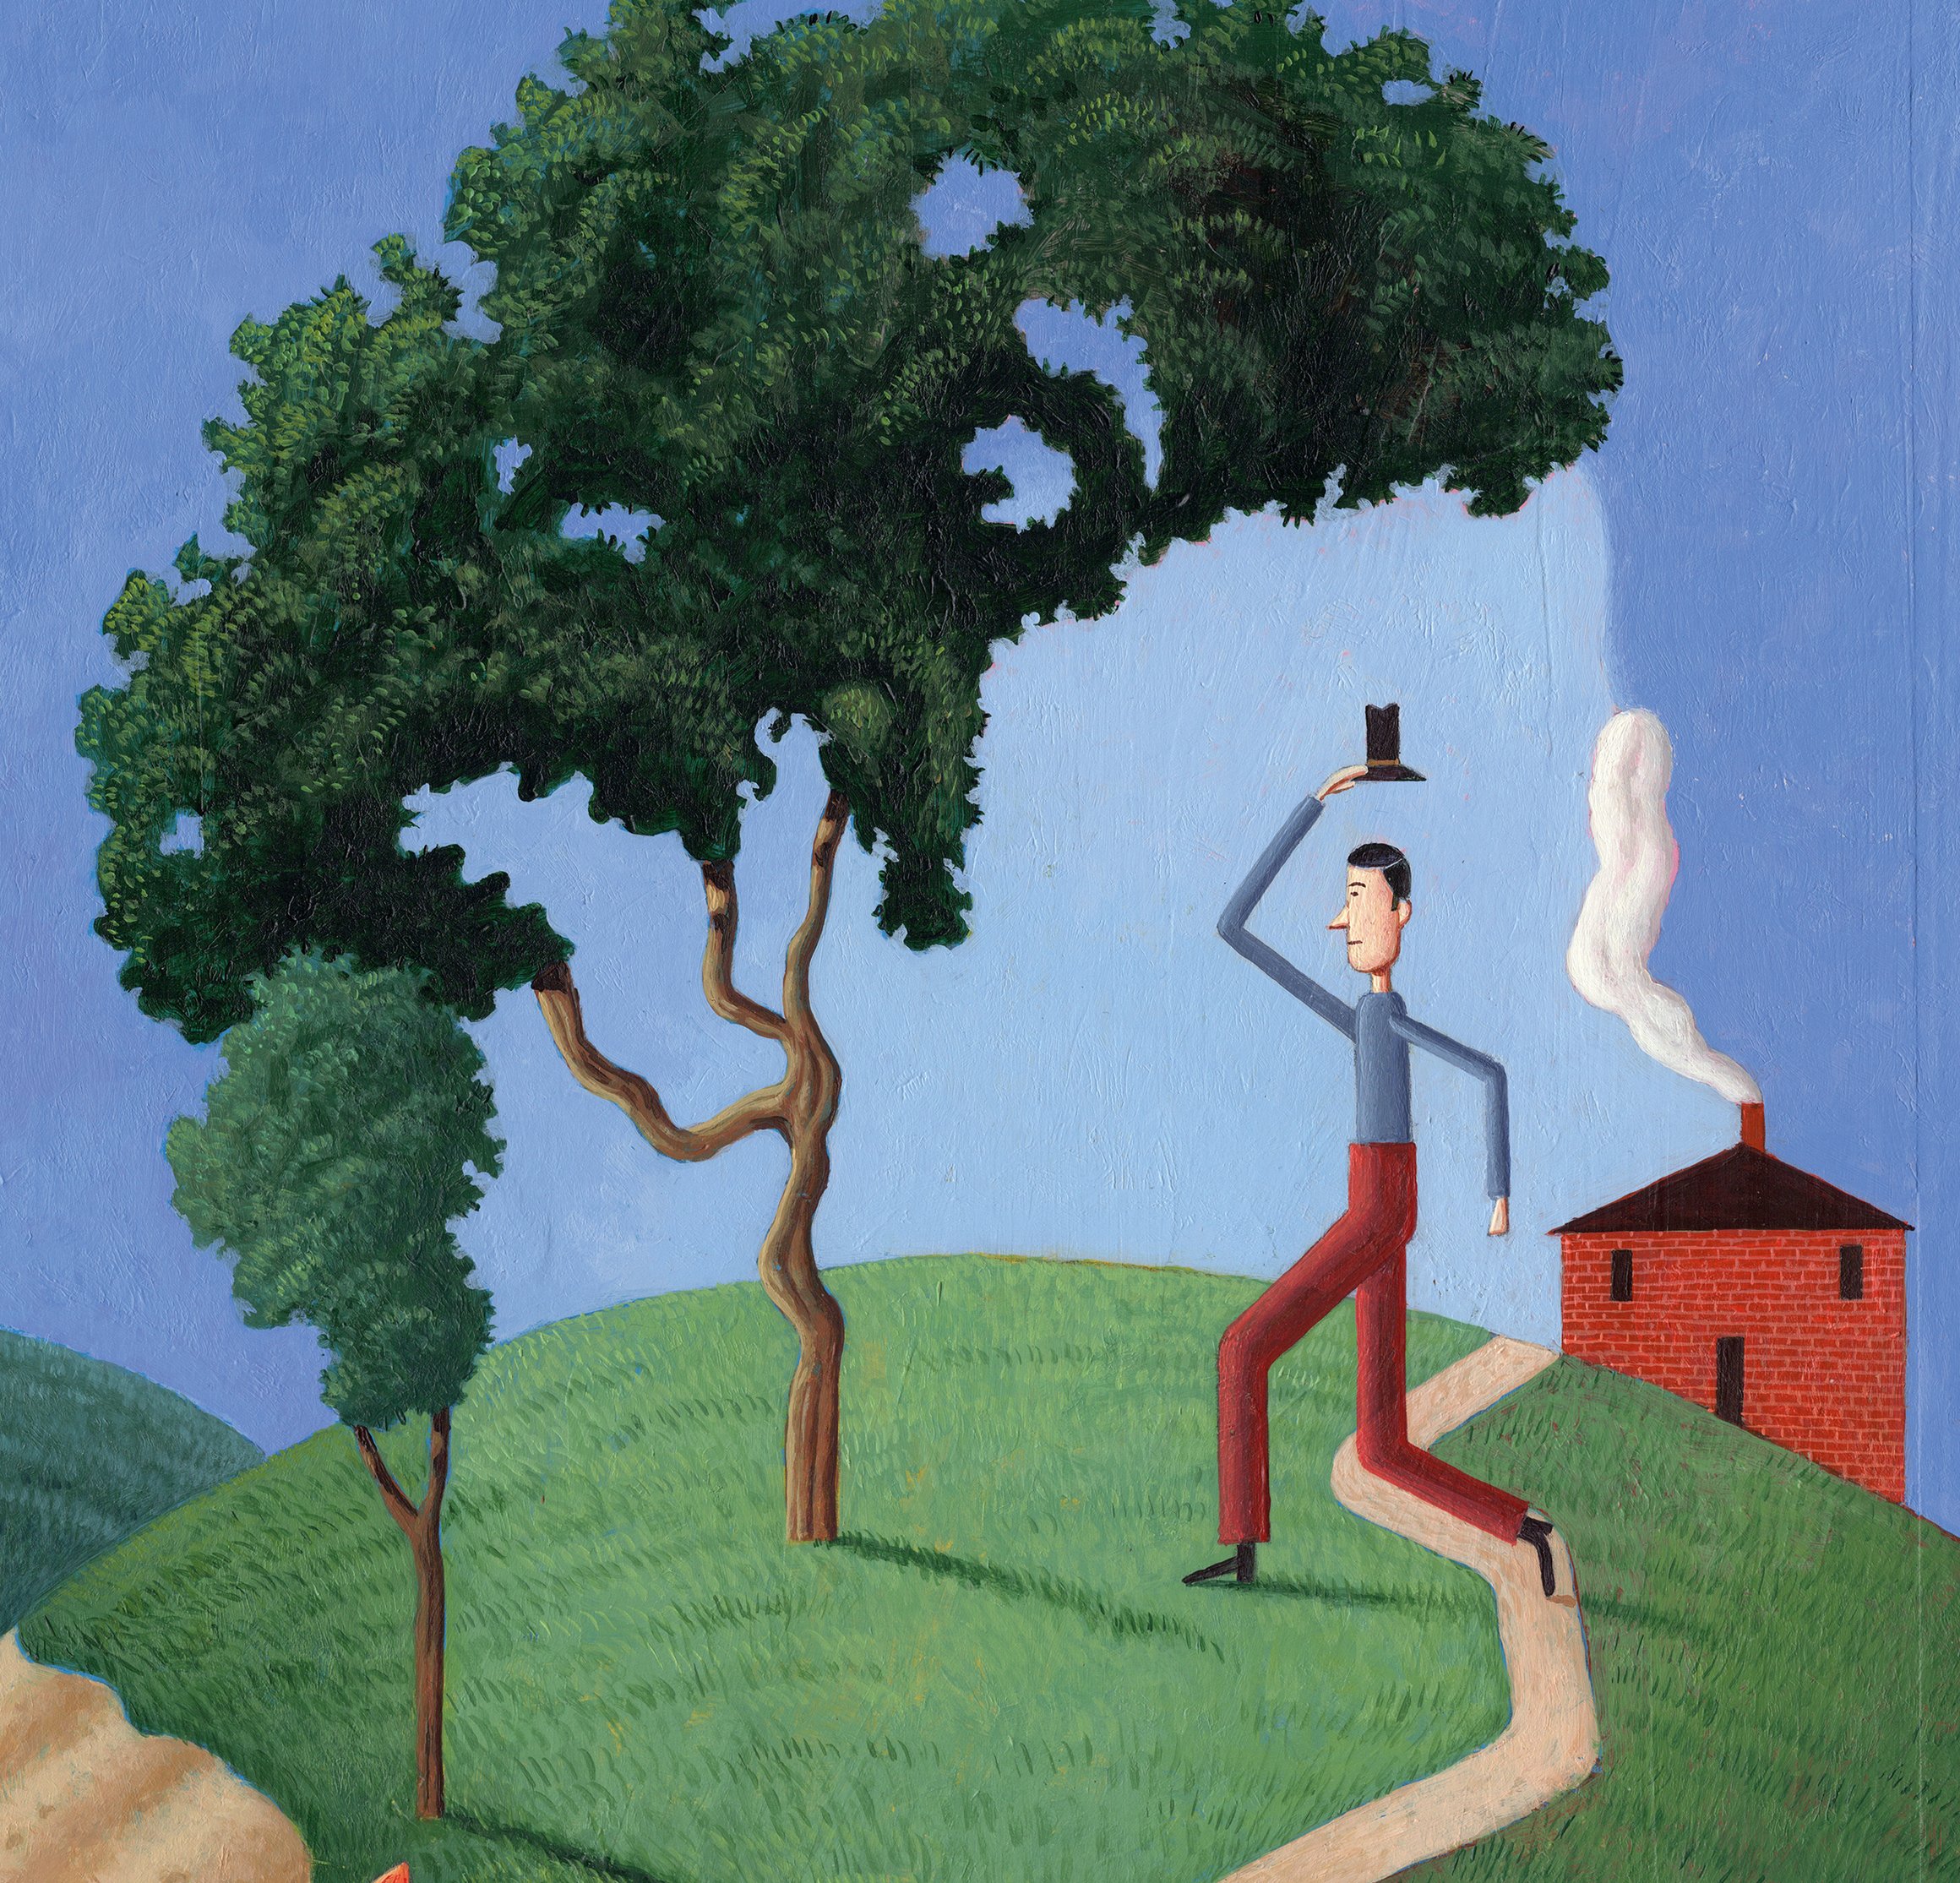 Die Illustration zeigt einen Mann, der auf einem Weg mit Baum an einem Haus vorbei läuft. Durch die Anordnung der Elemente lässt sich auch ein großes Gesicht erkennen.